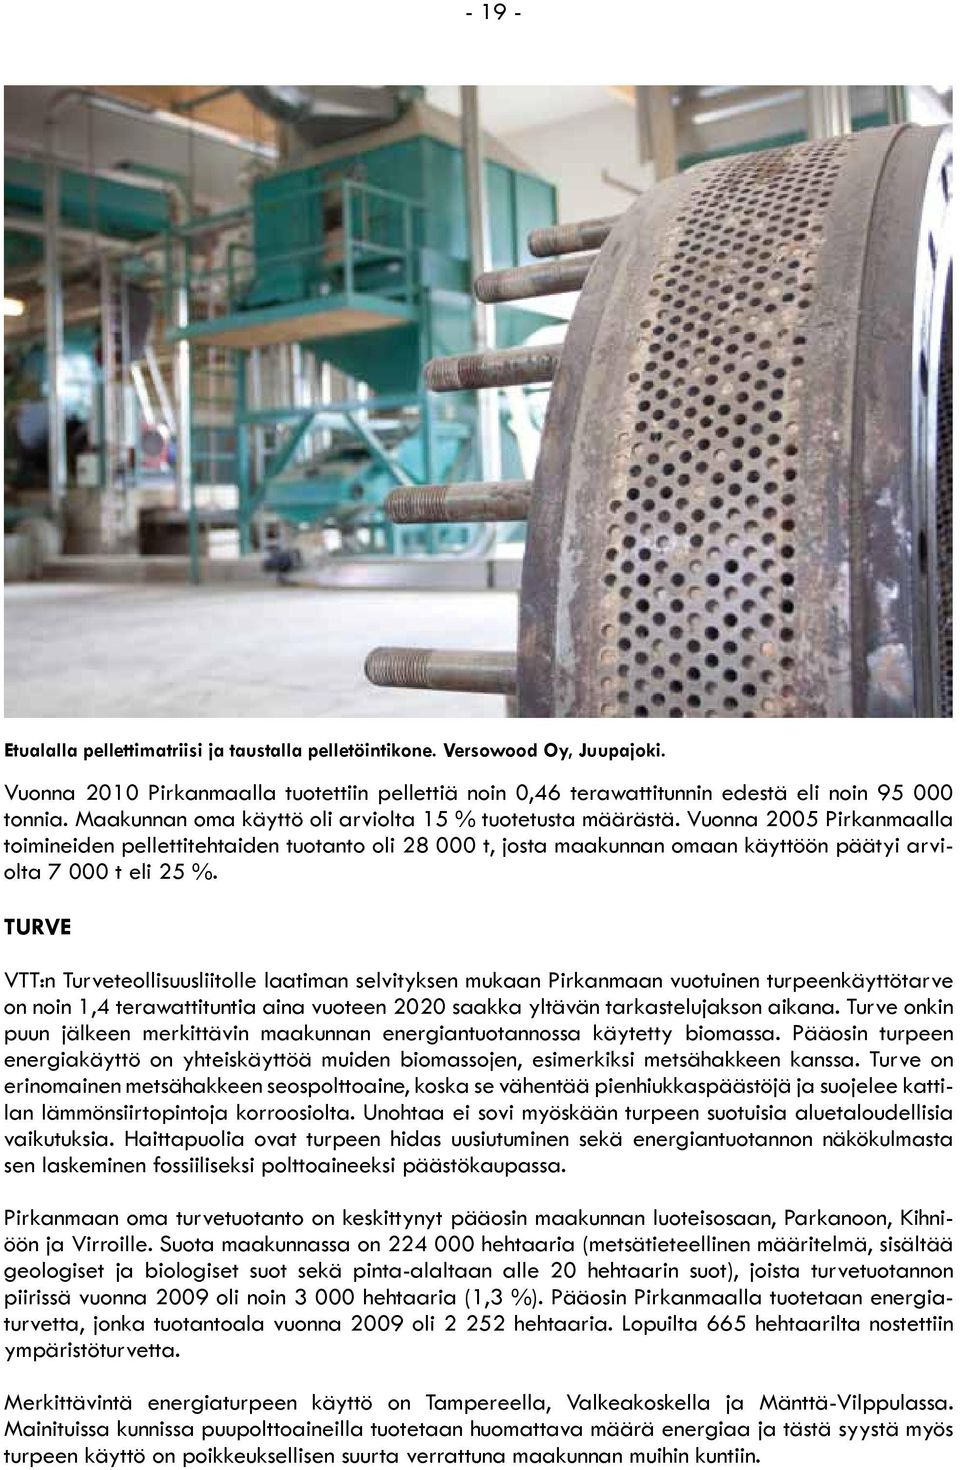 Vuonna 2005 Pirkanmaalla toimineiden pellettitehtaiden tuotanto oli 28 000 t, josta maakunnan omaan käyttöön päätyi arviolta 7 000 t eli 25 %.